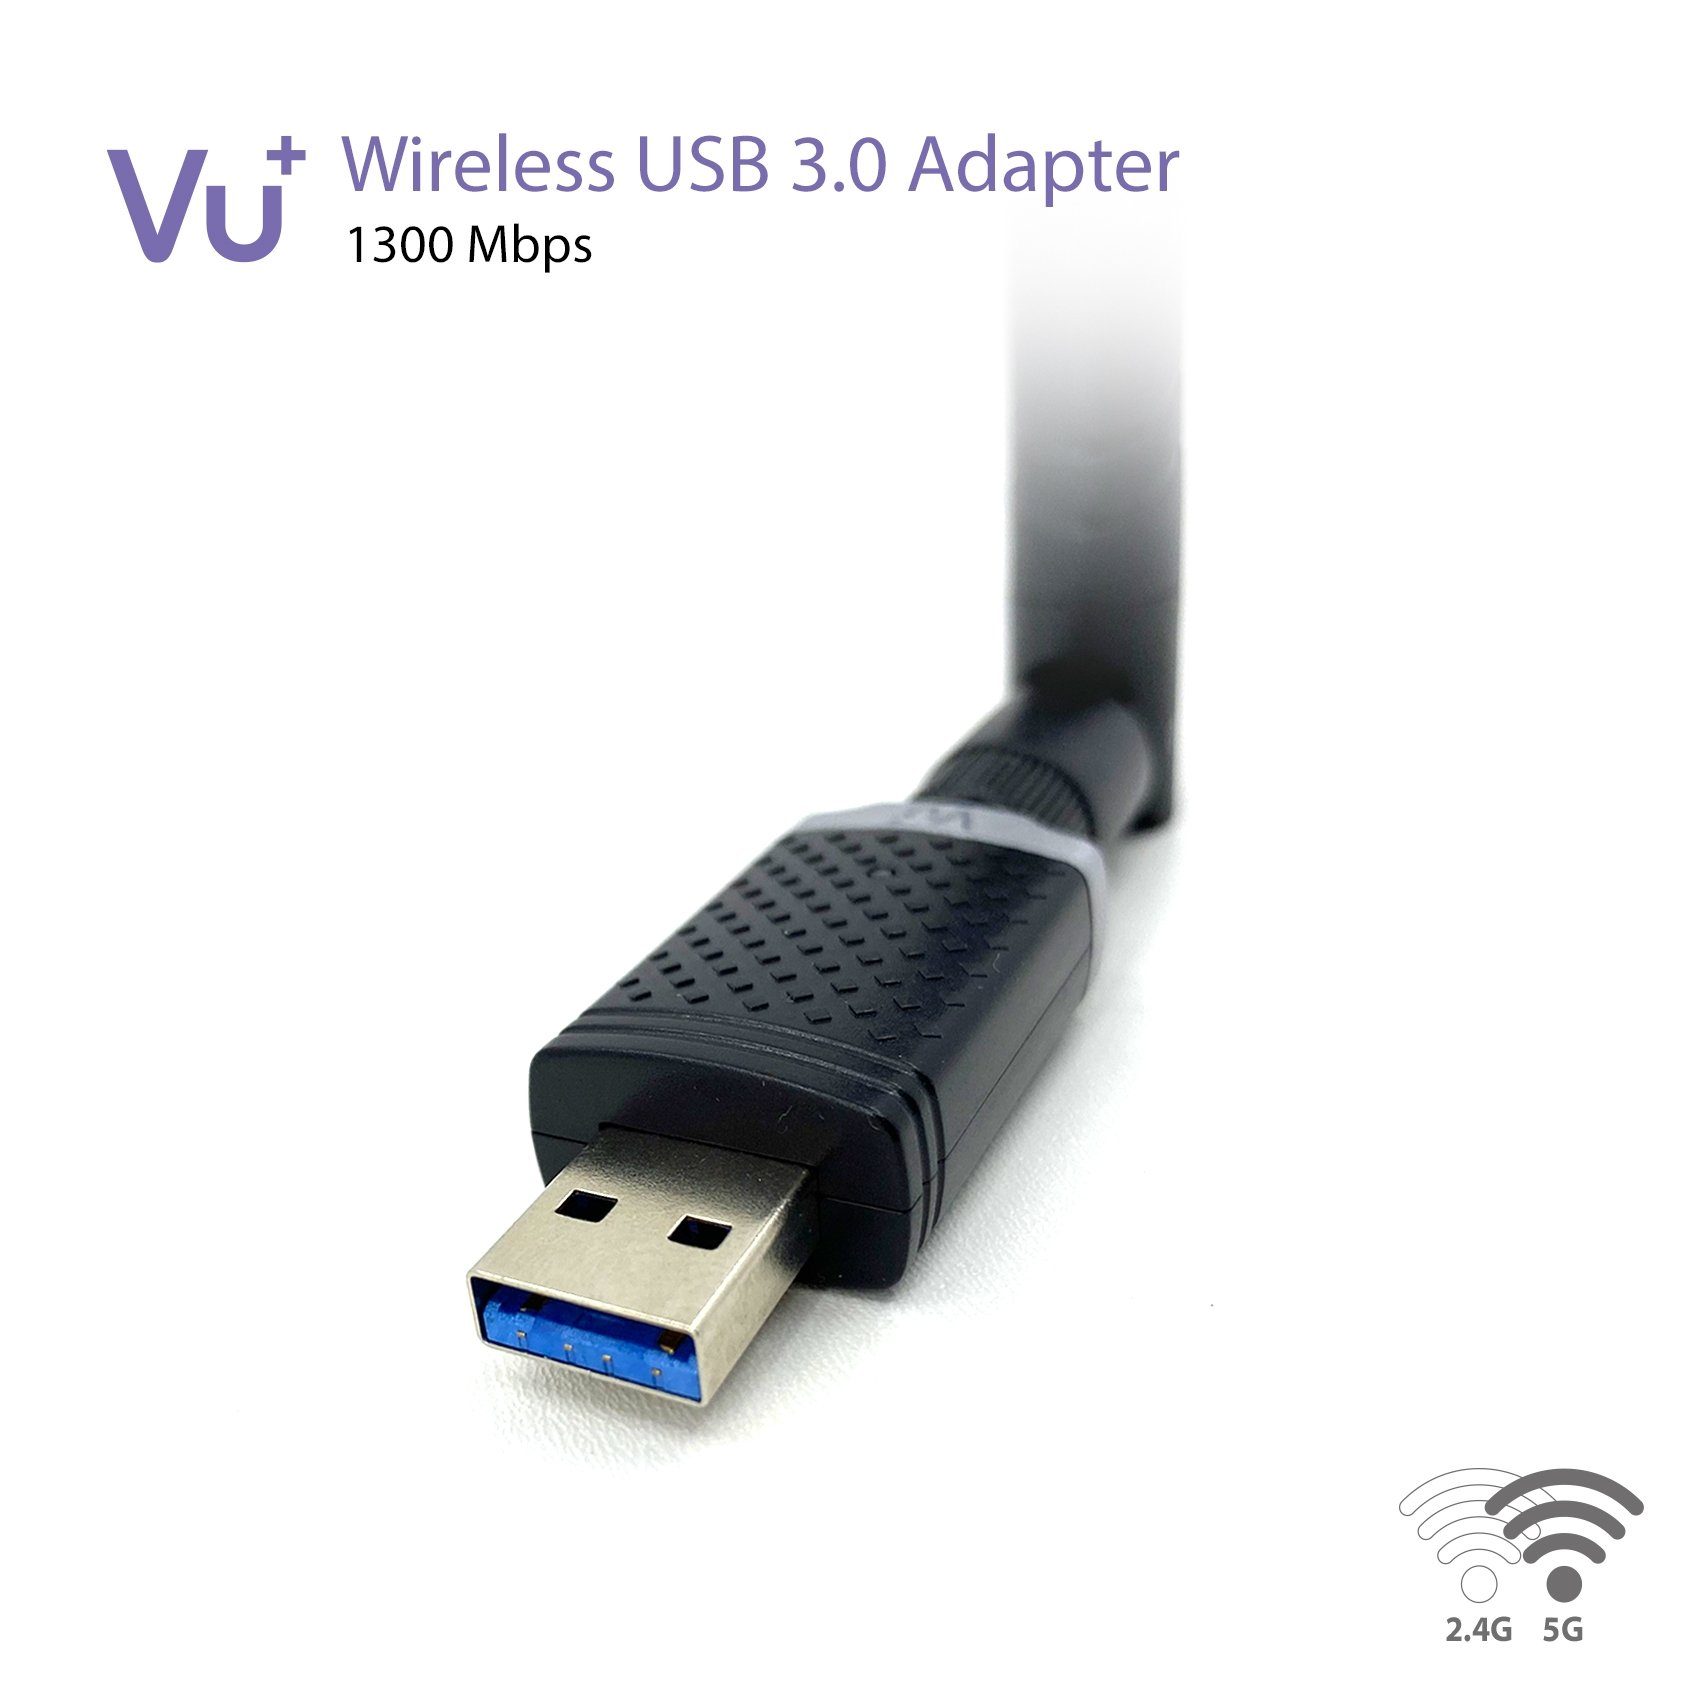 6 dBi VU+ Adapter USB 3.0 Dual Antenne 1300 inkl. Tuner Wireless Band VU+® Mbps